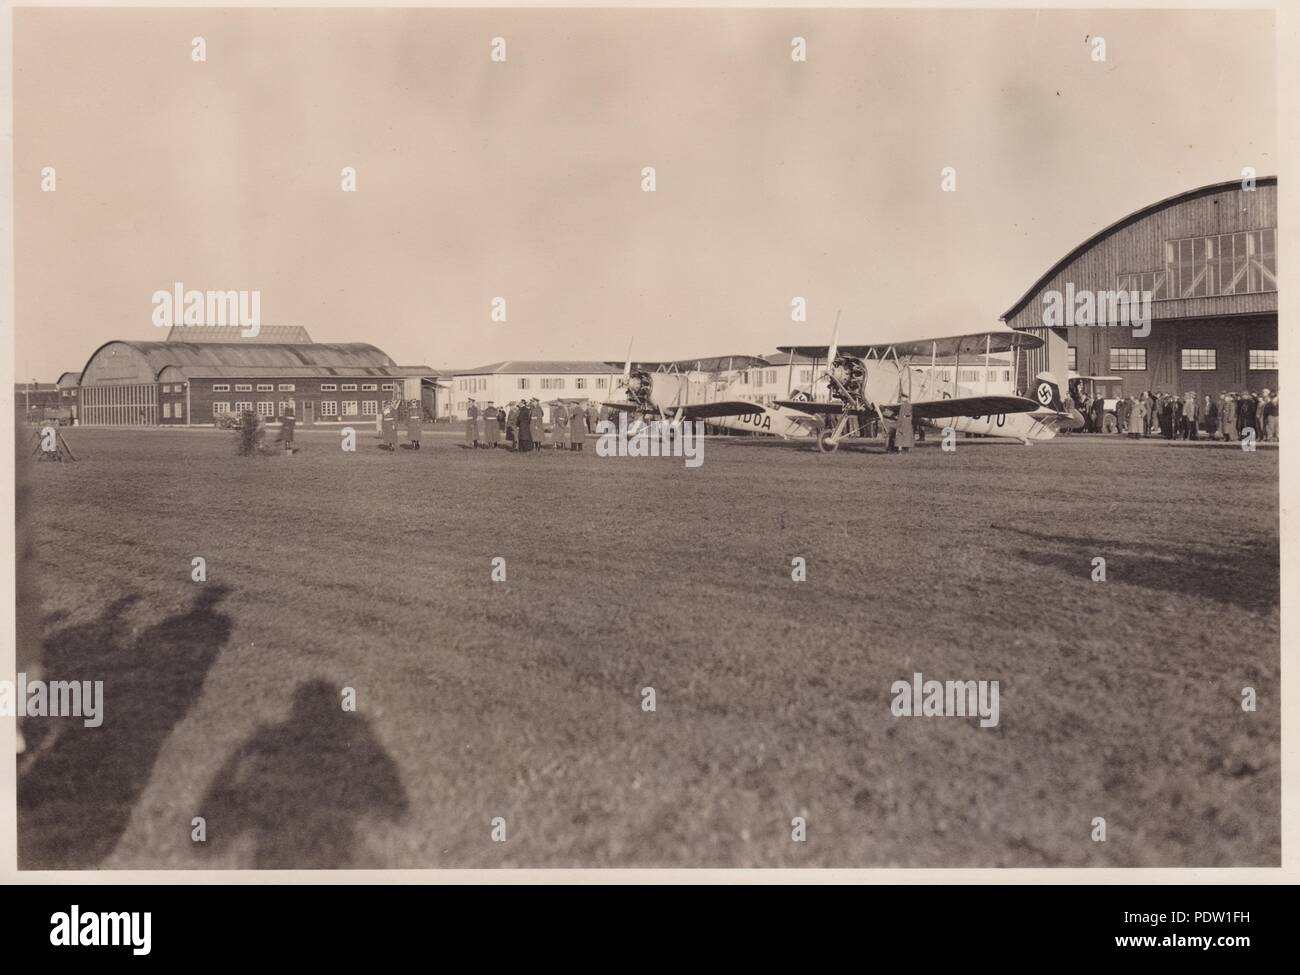 Bild aus dem Fotoalbum von Oberfeldwebel Karl gendner von 1. Staffel, Kampfgeschwader 40: Giebelstadt Airfield 1936, 8./KG 355. Stockfoto